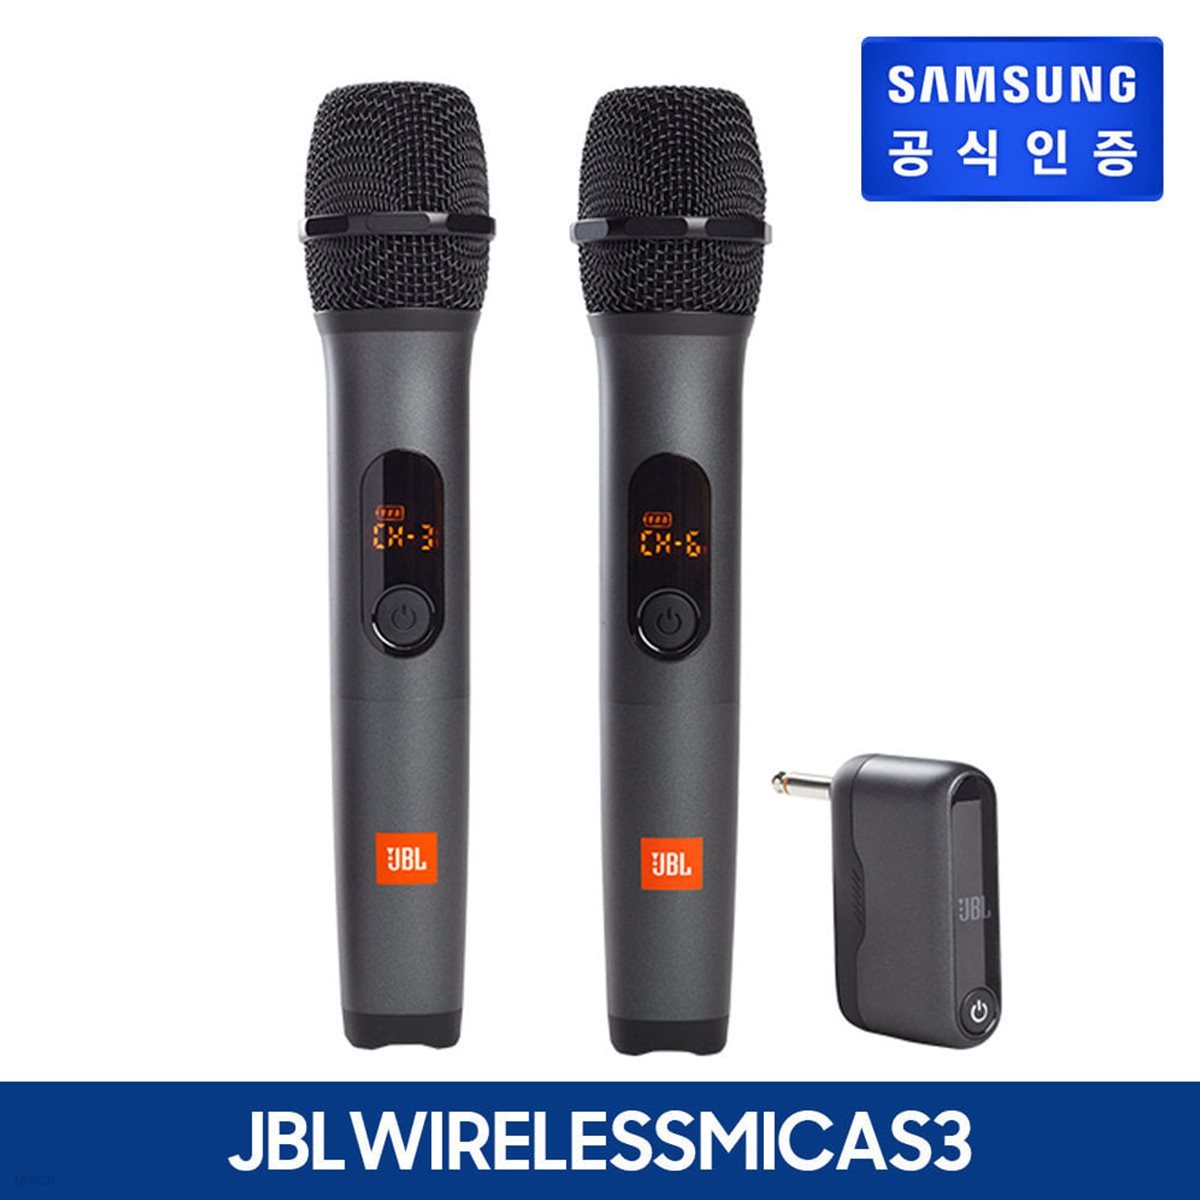 [삼성정품]JBL 무선마이크 AS3 듀얼 2채널 WIRELESS 핸드마이크 행사 버스킹 보컬용